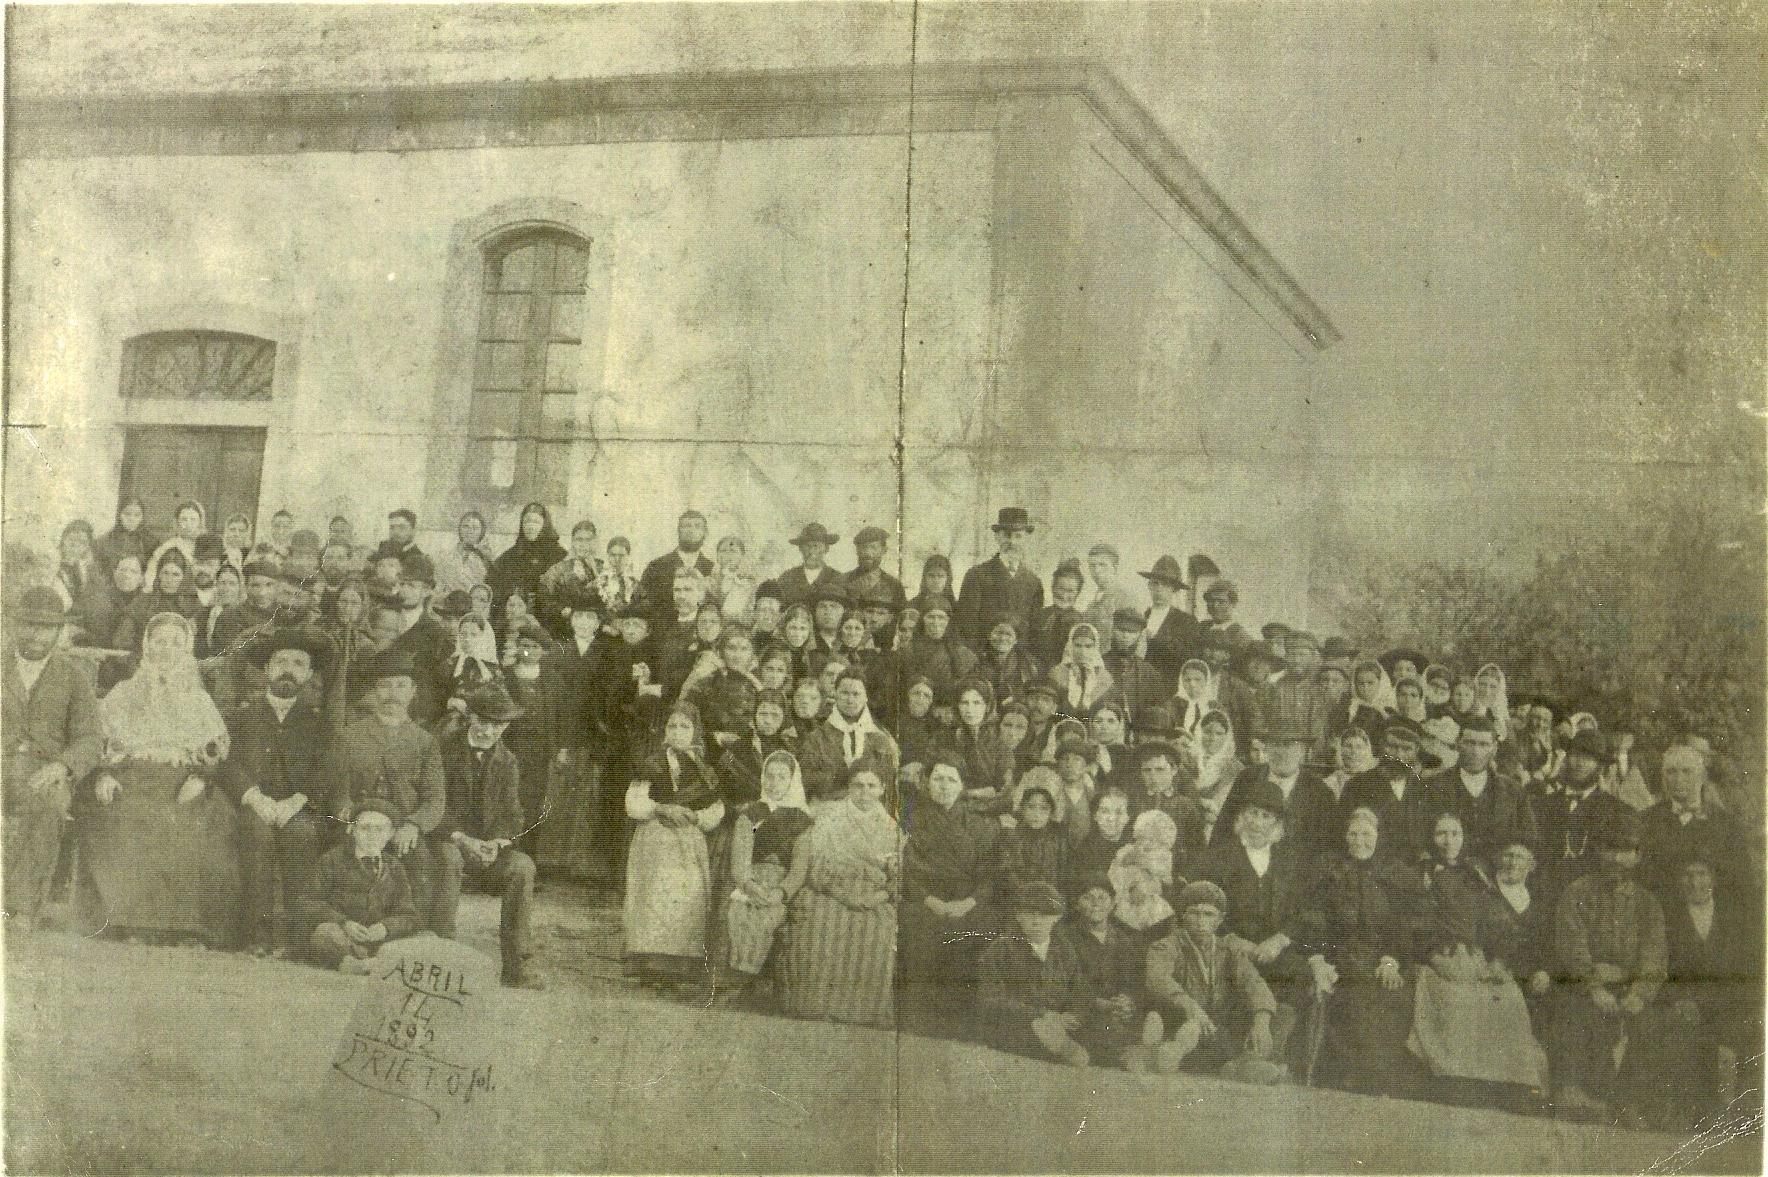 Foto más antigua de la congregación. Arriba en el centro se ve a D. Tomás Blamire y su esposa Rosetta.